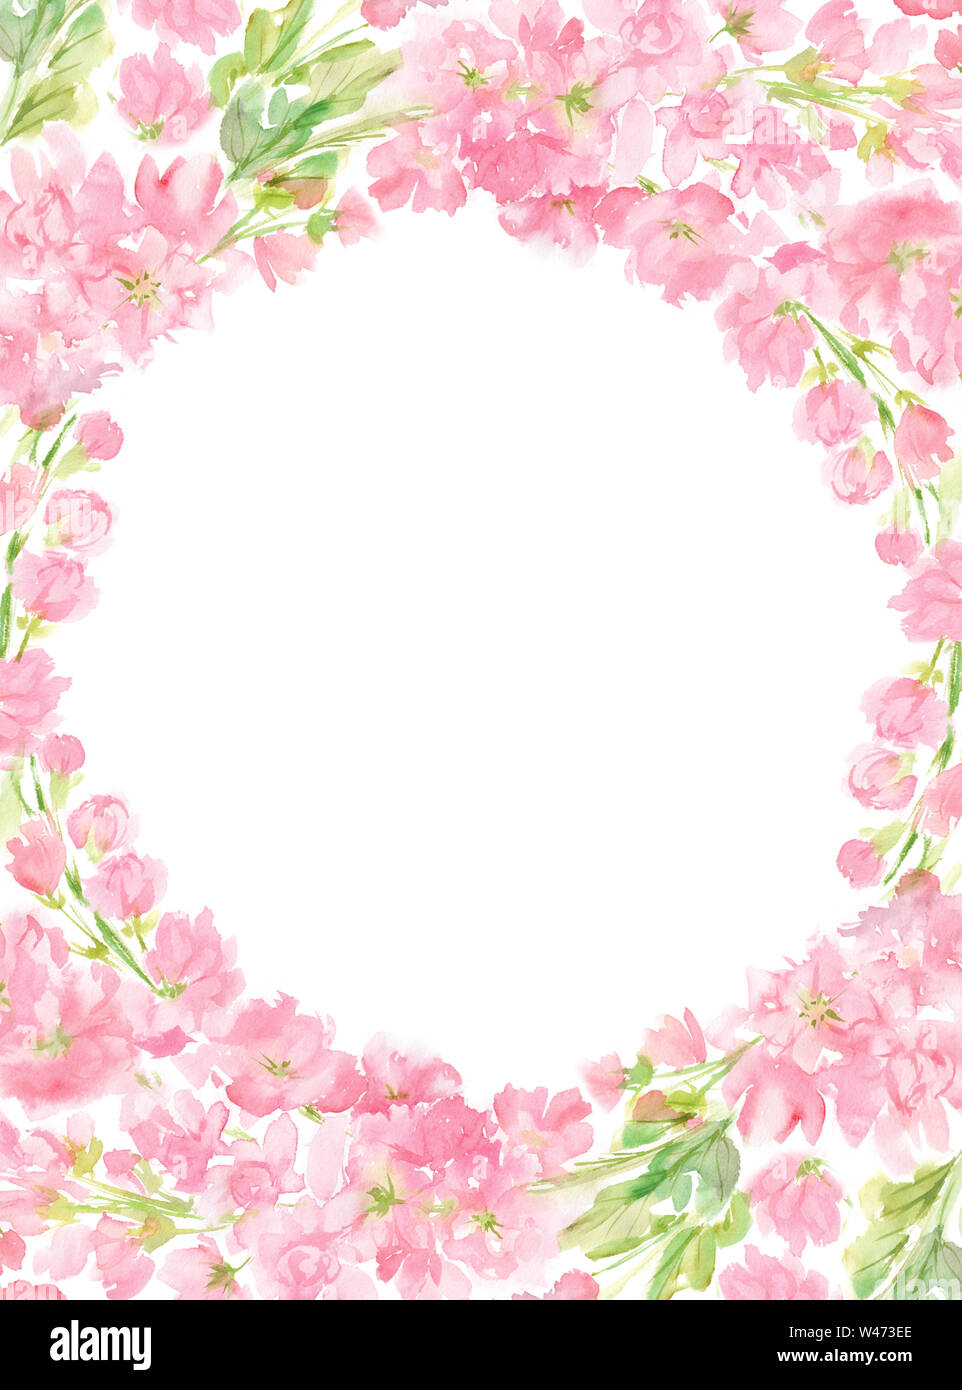 Rosa floreale astratta acquerello round telaio verticale a disposizione ghirlanda color pastello fiori e foglie dipinte a mano in background cerchio per il testo Foto Stock